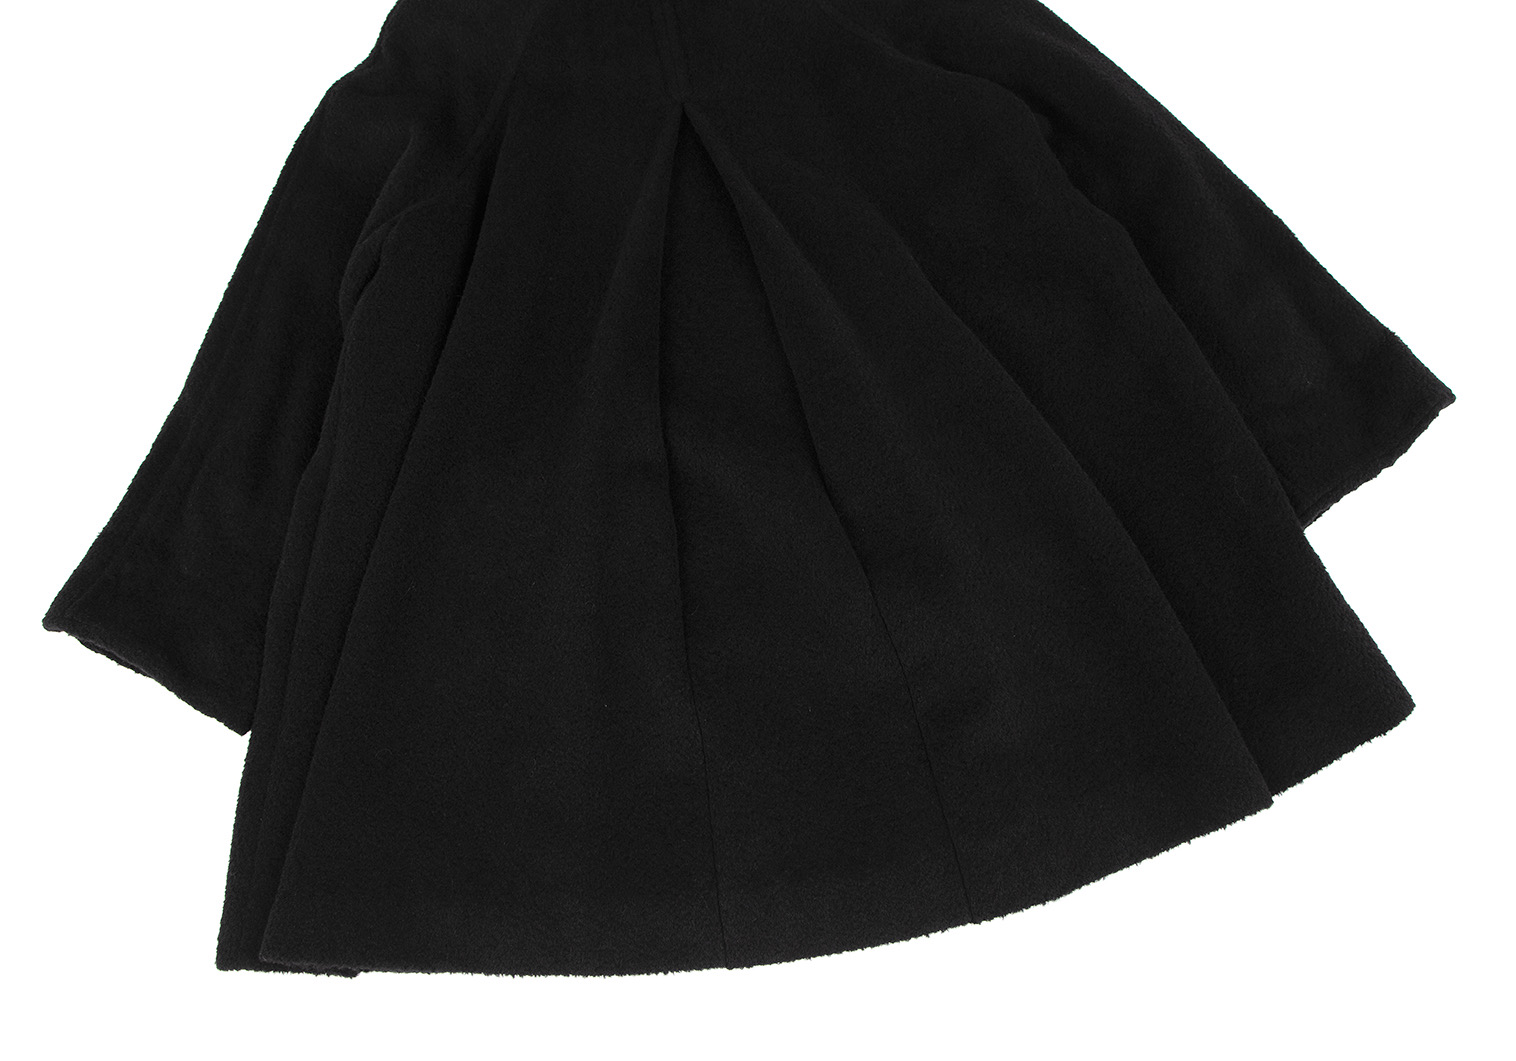 マドモアゼルディオールMademoiselle Dior ウール起毛シングルコート 黒S